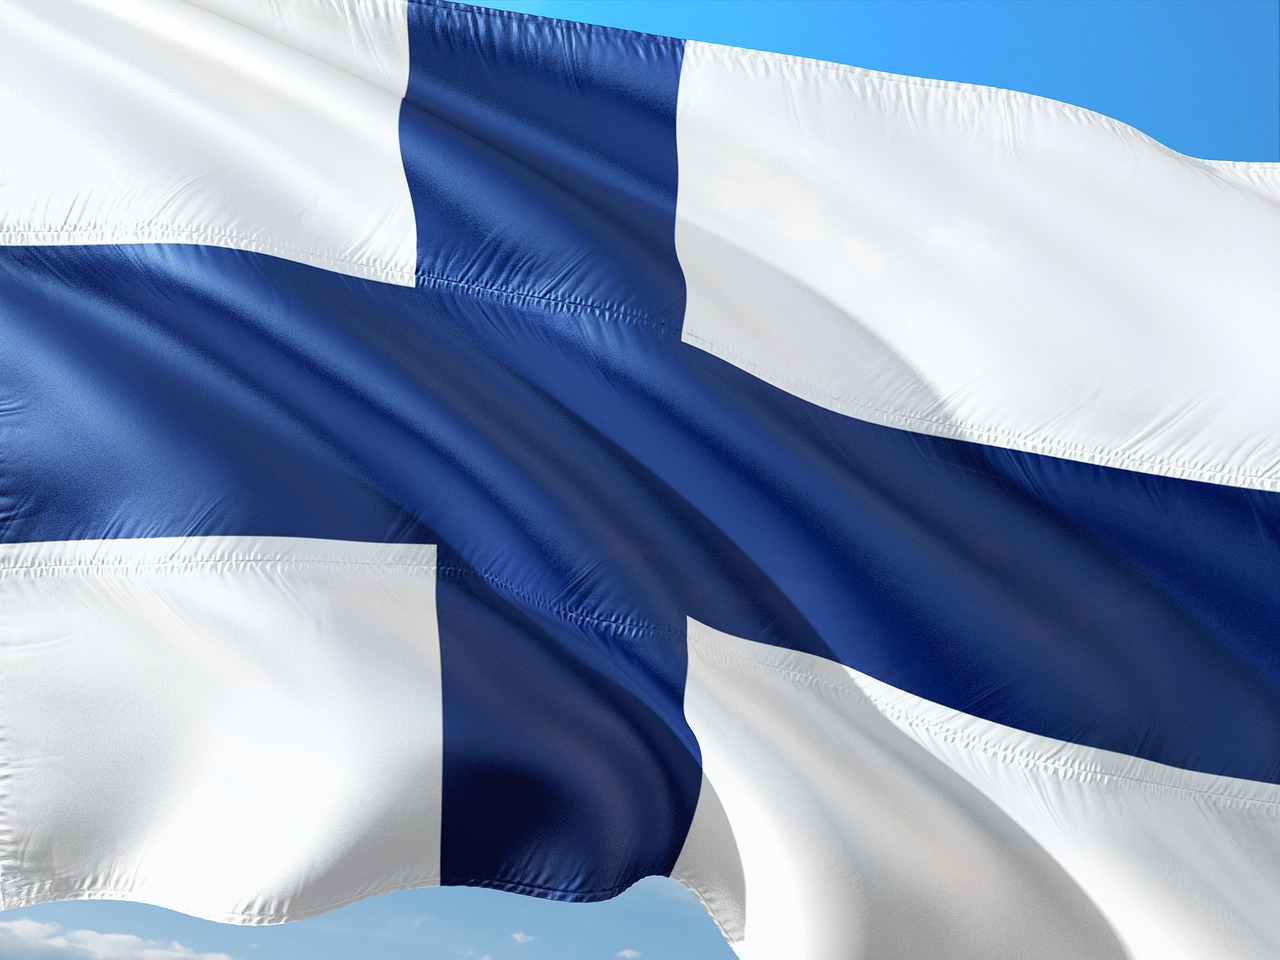 Suomen sinivalkoinen lippu liehuu taivaan sinessä.